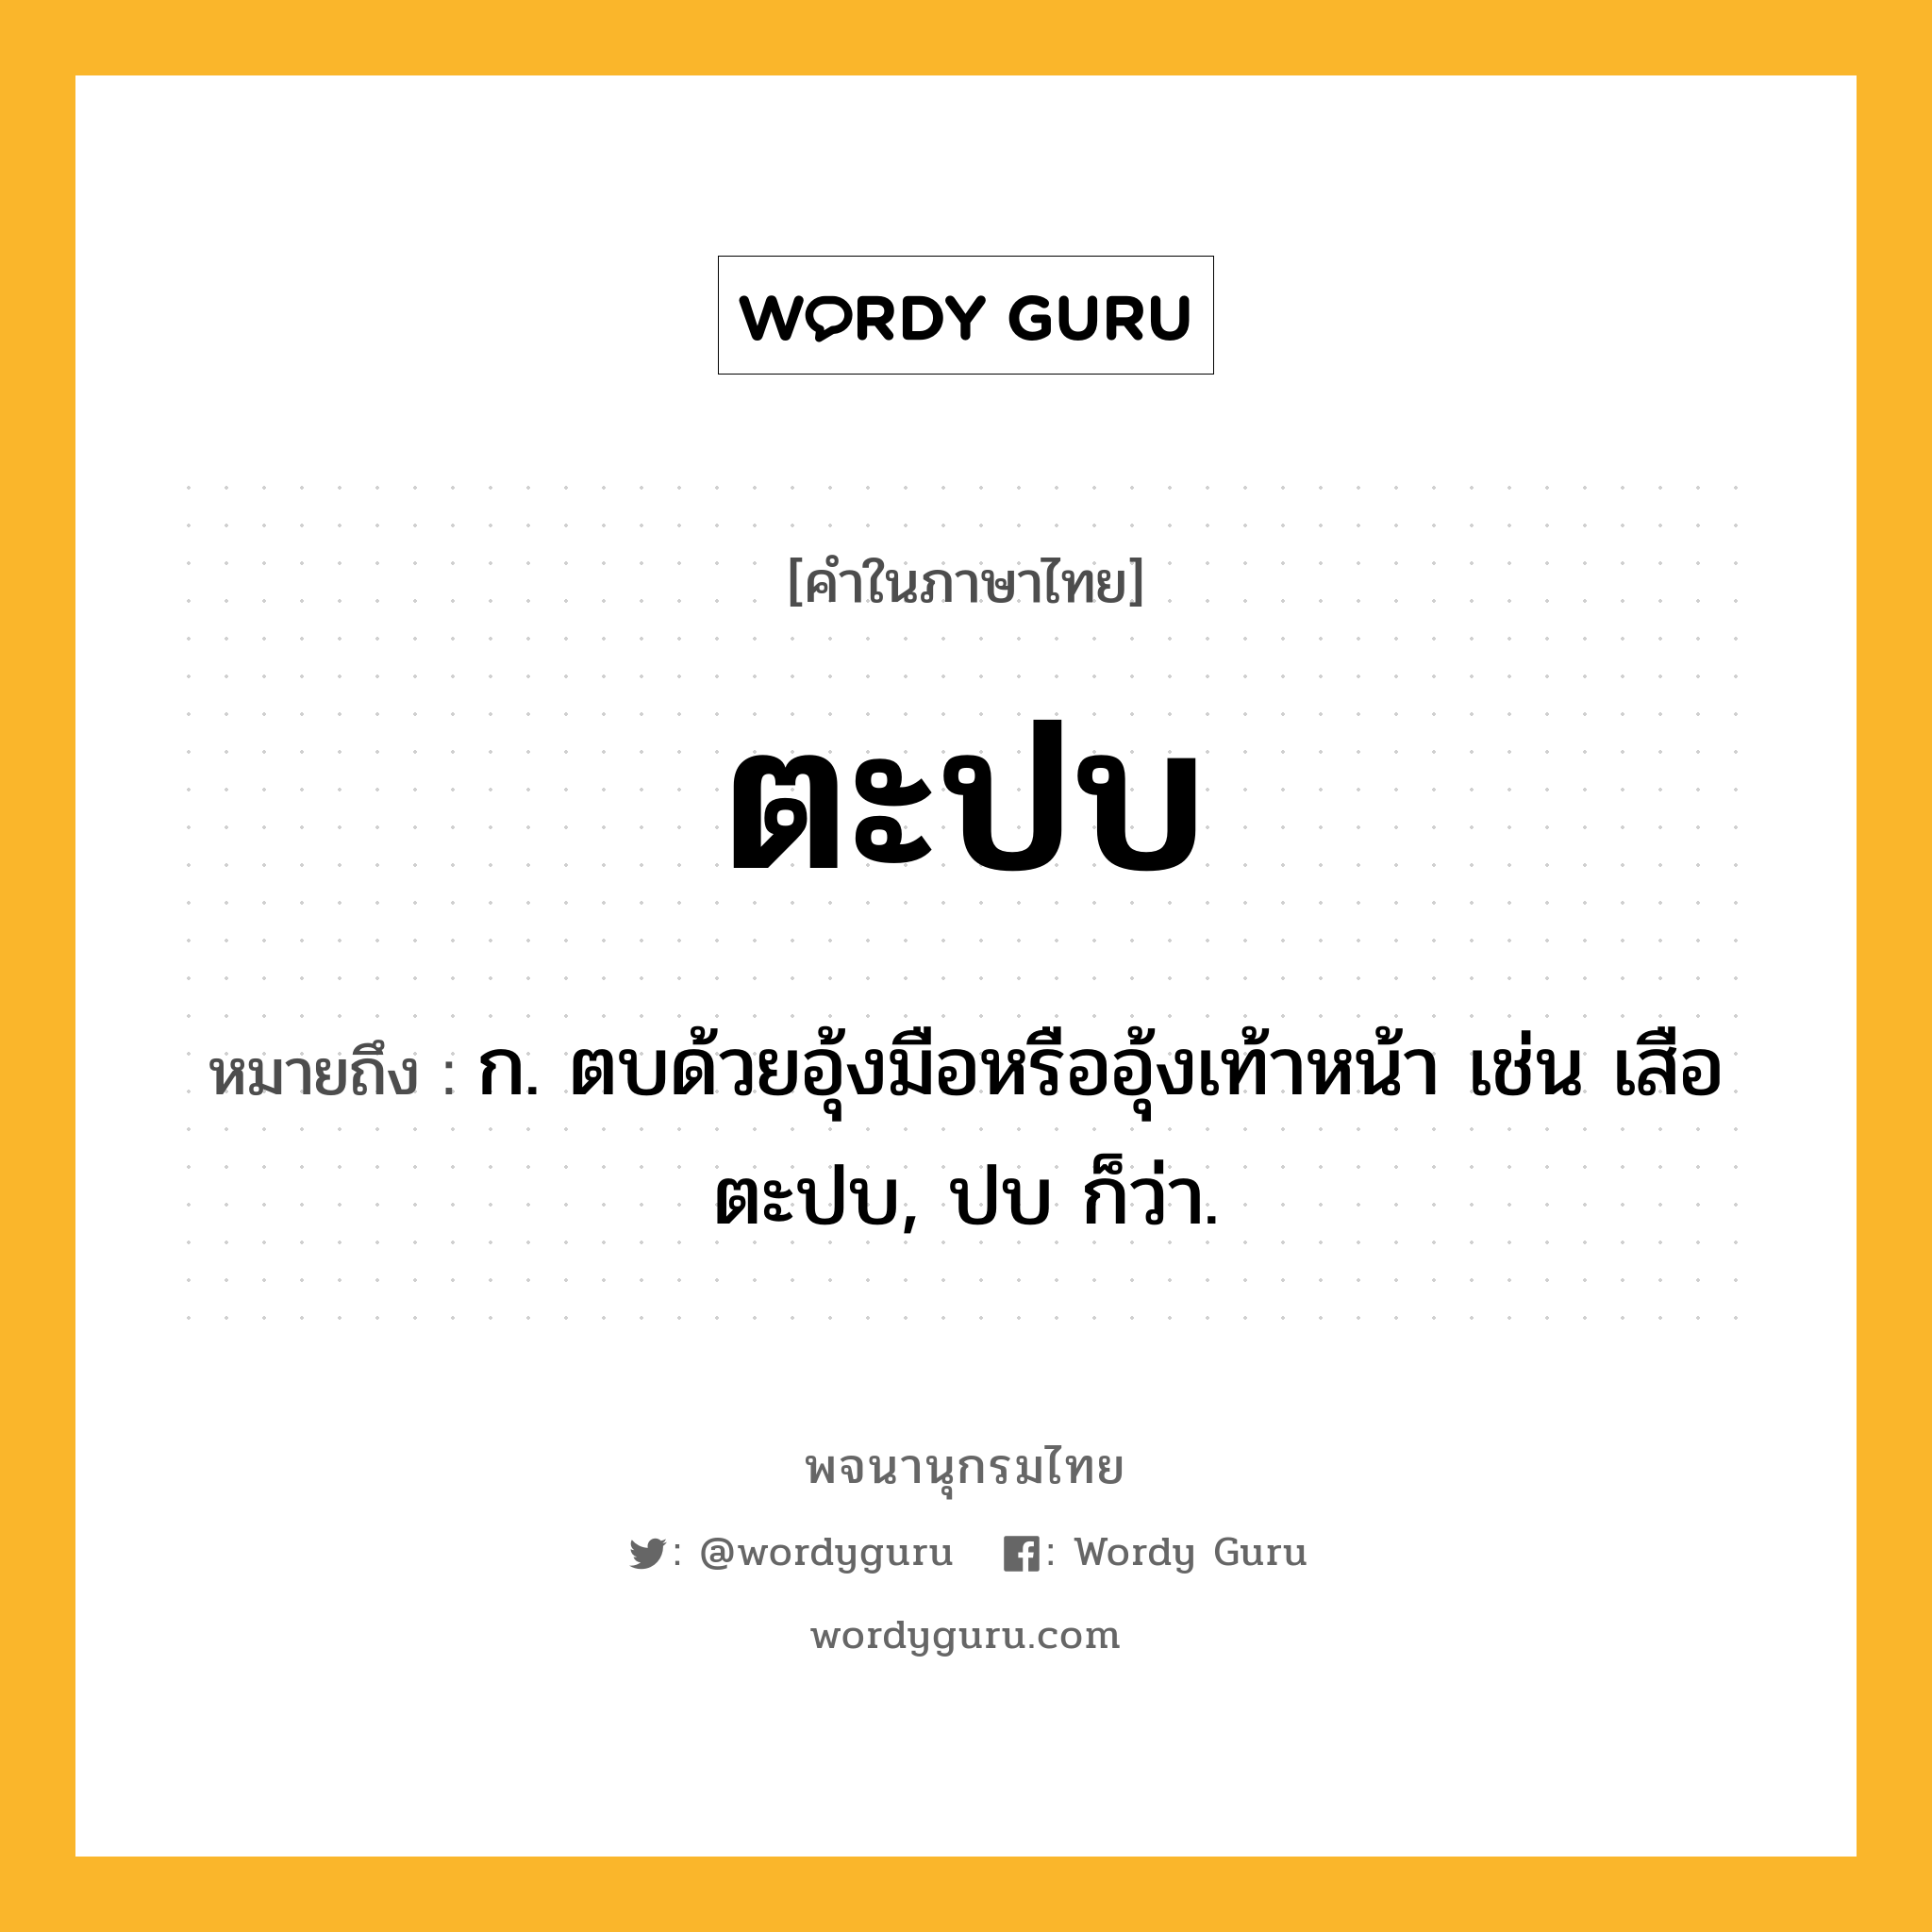 ตะปบ ความหมาย หมายถึงอะไร?, คำในภาษาไทย ตะปบ หมายถึง ก. ตบด้วยอุ้งมือหรืออุ้งเท้าหน้า เช่น เสือตะปบ, ปบ ก็ว่า.